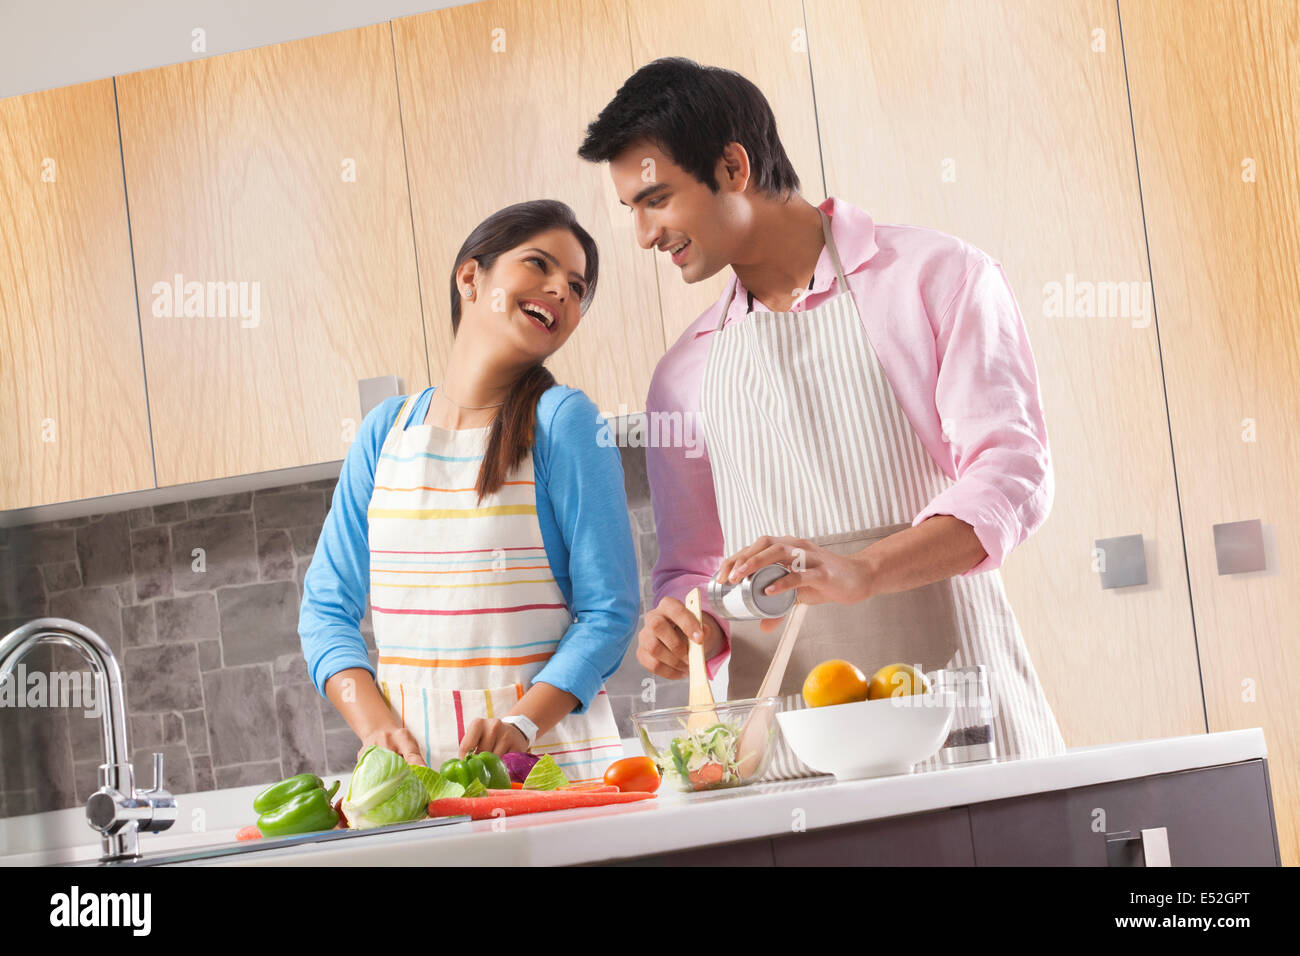 Happy young couple en train de préparer une salade fraîche dans la cuisine Banque D'Images